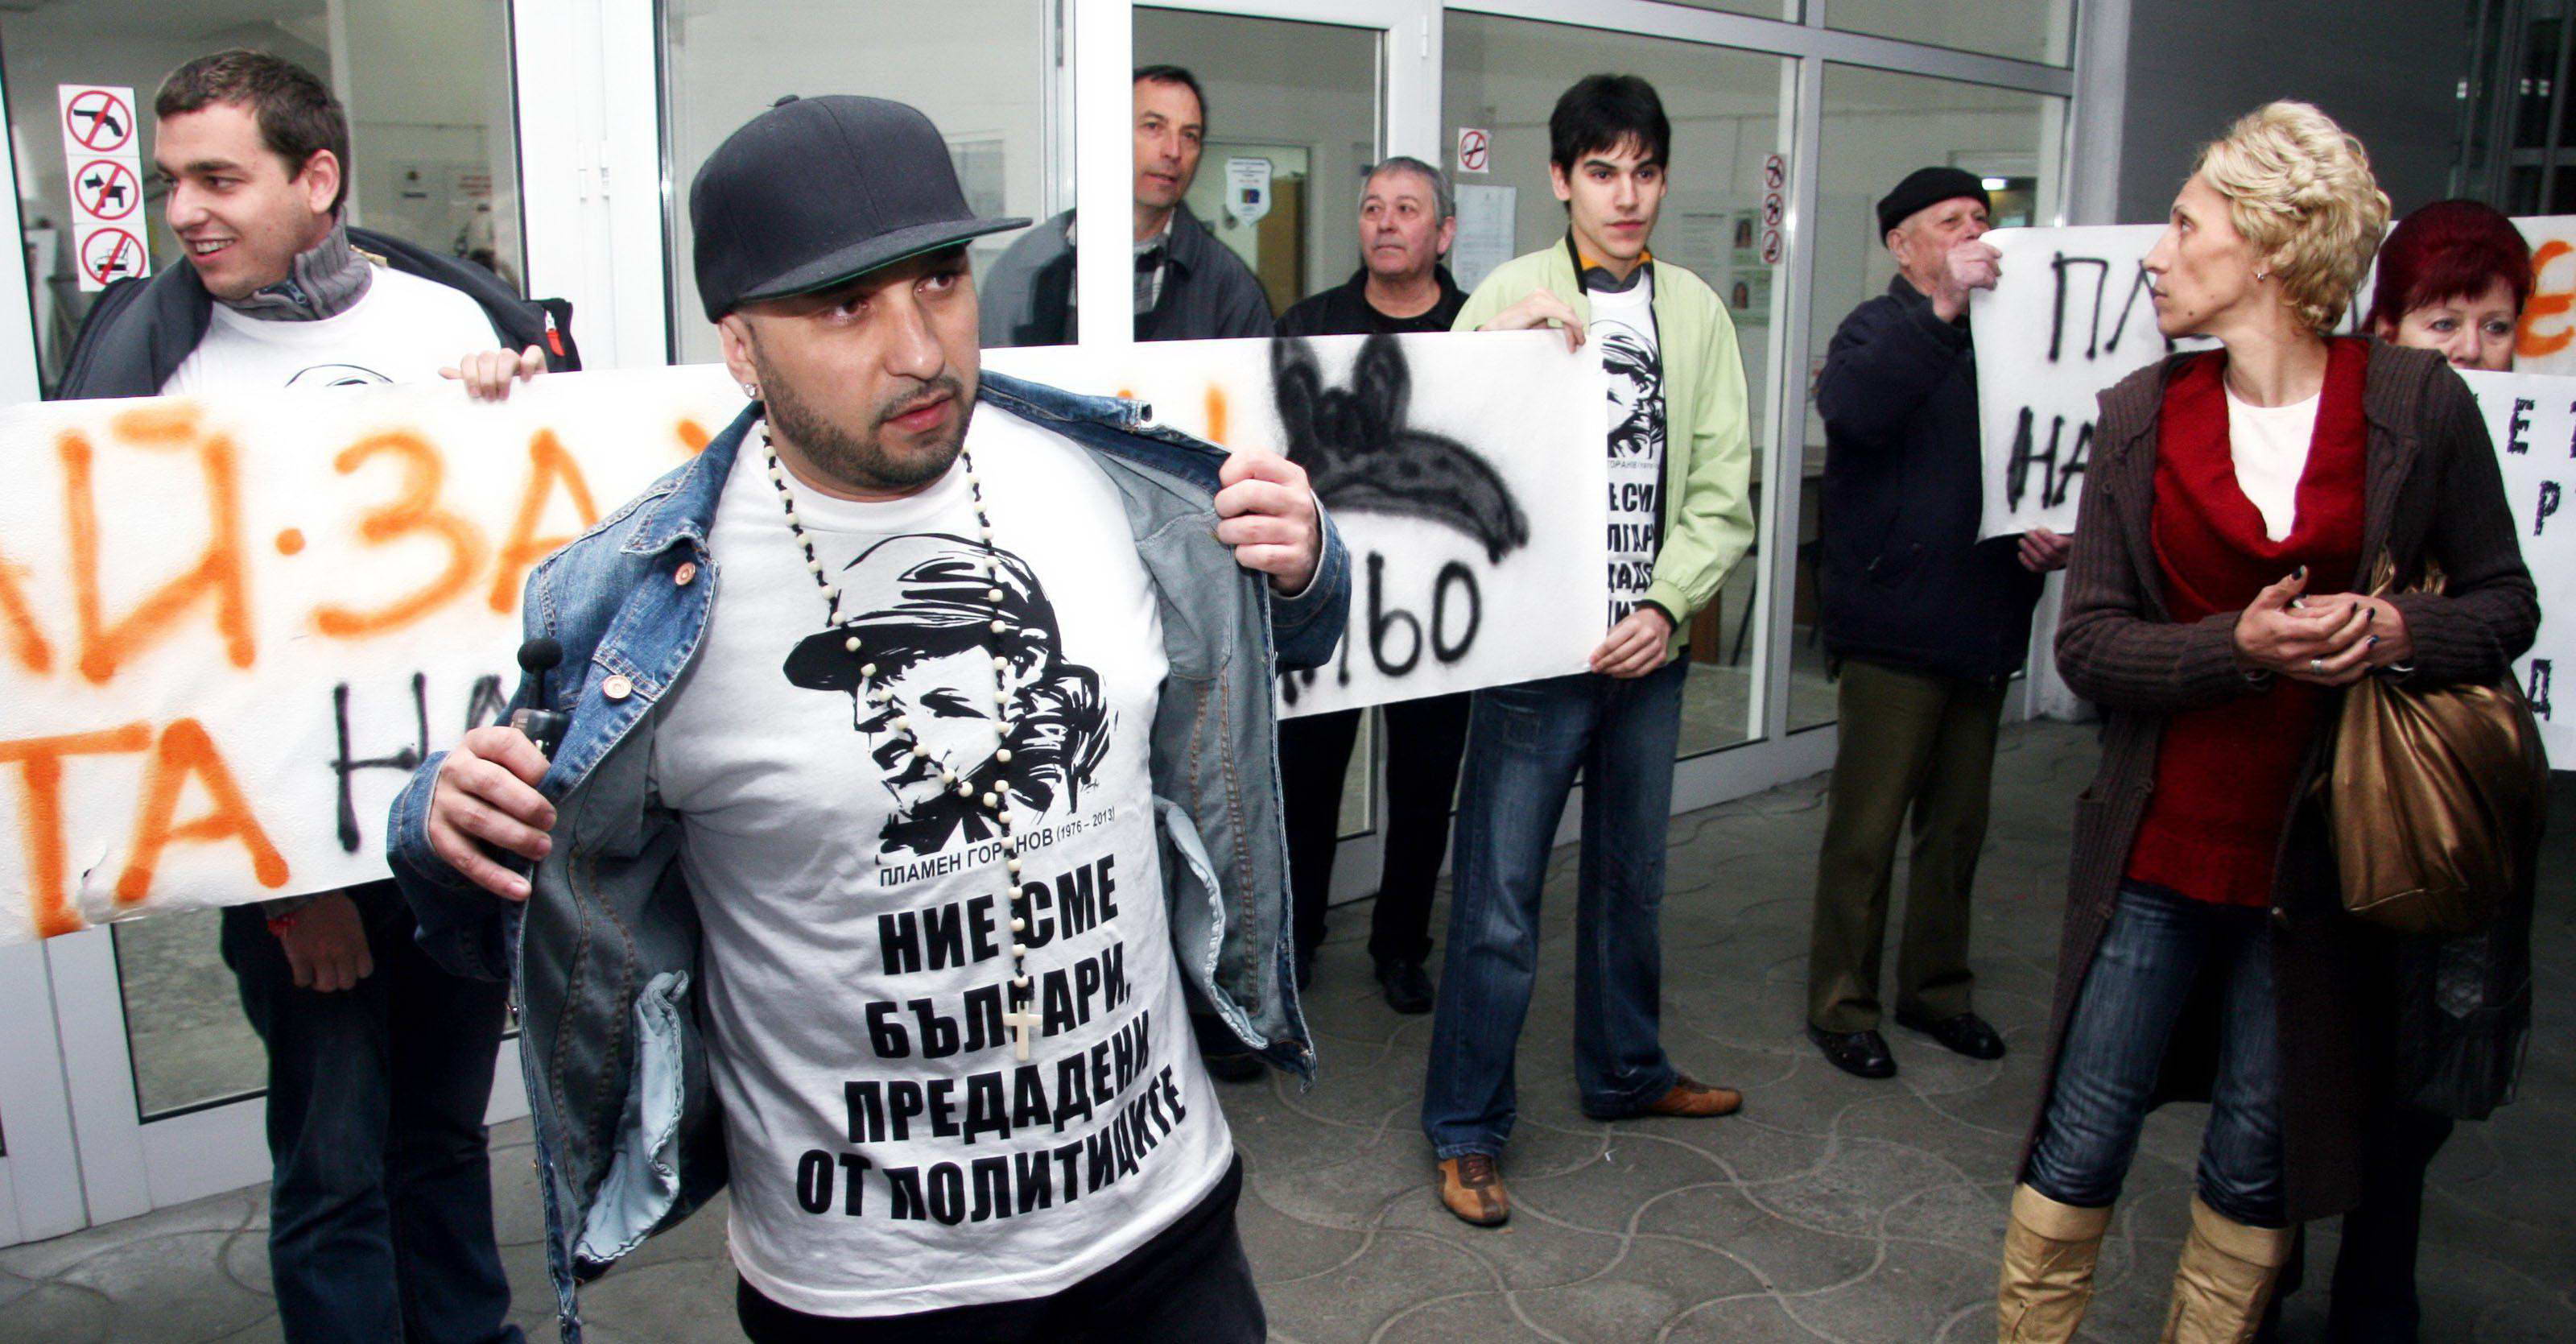 Мишо Шамара: Арестуван съм за побой! 